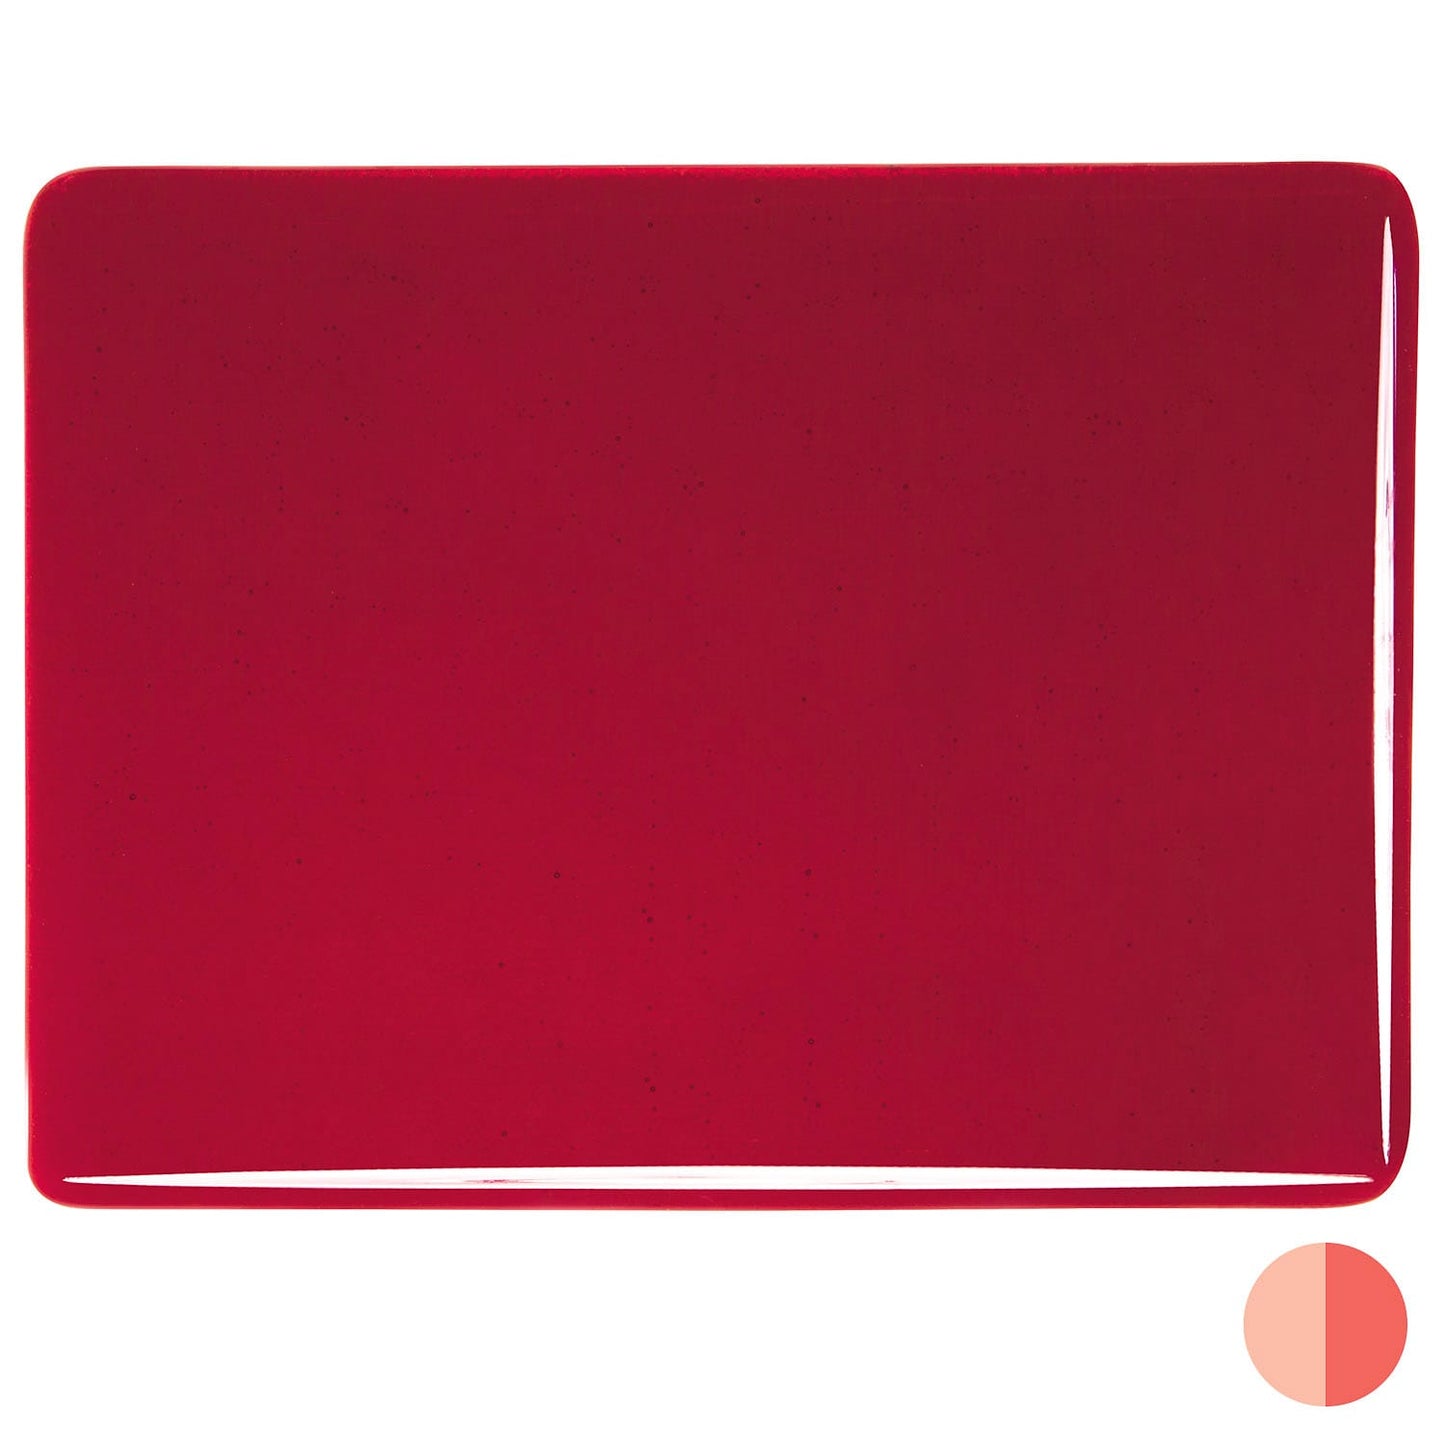 Bullseye COE90 Fusing Glass 001322 Garnet Red Full Sheet